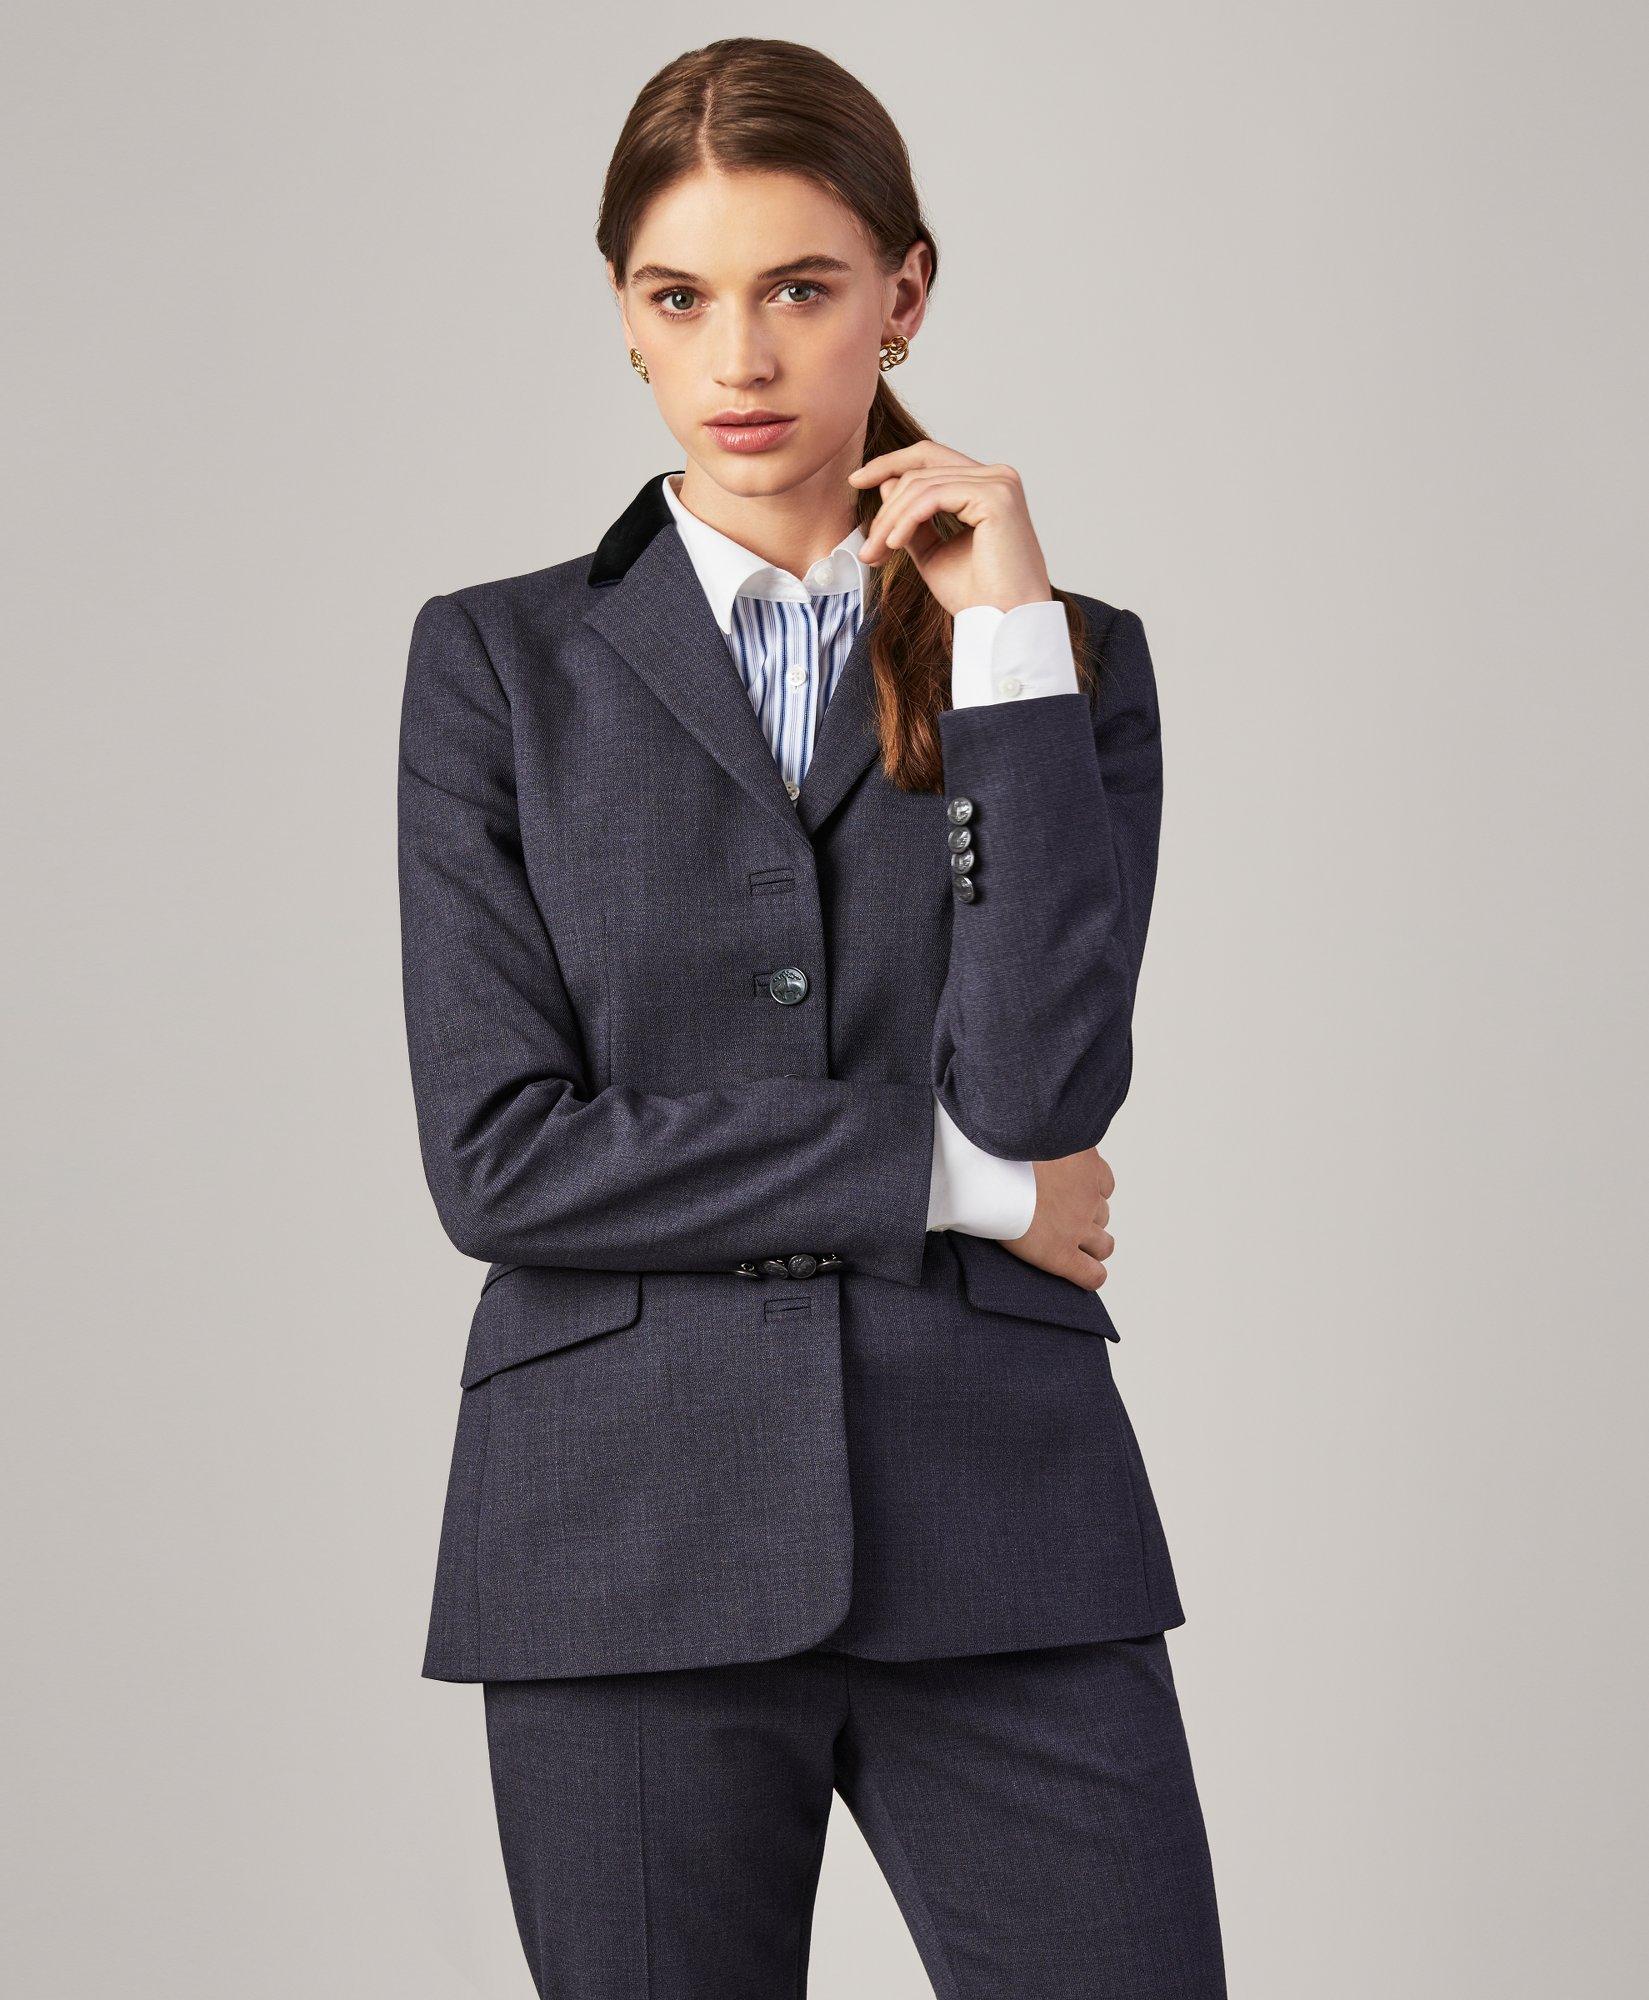 Female Suit